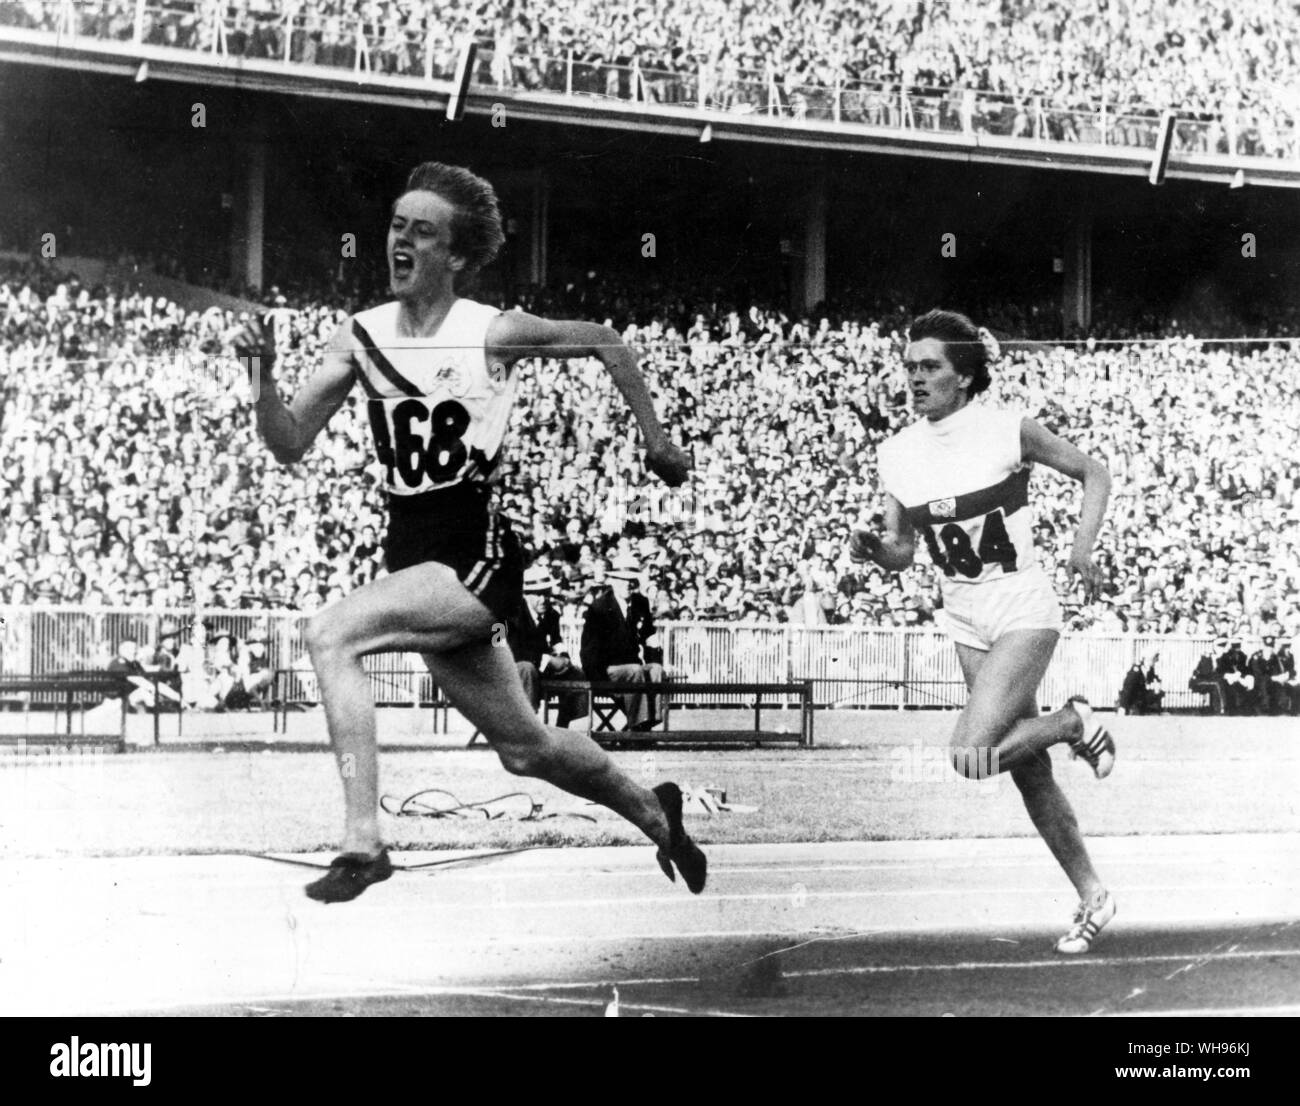 Aus., Melbourne, Olimpiadi, 1956: Betty Cuthbert (Australia) al traguardo della donna 200m Finale, precedendo di Christa Stubnik (Germania). Foto Stock